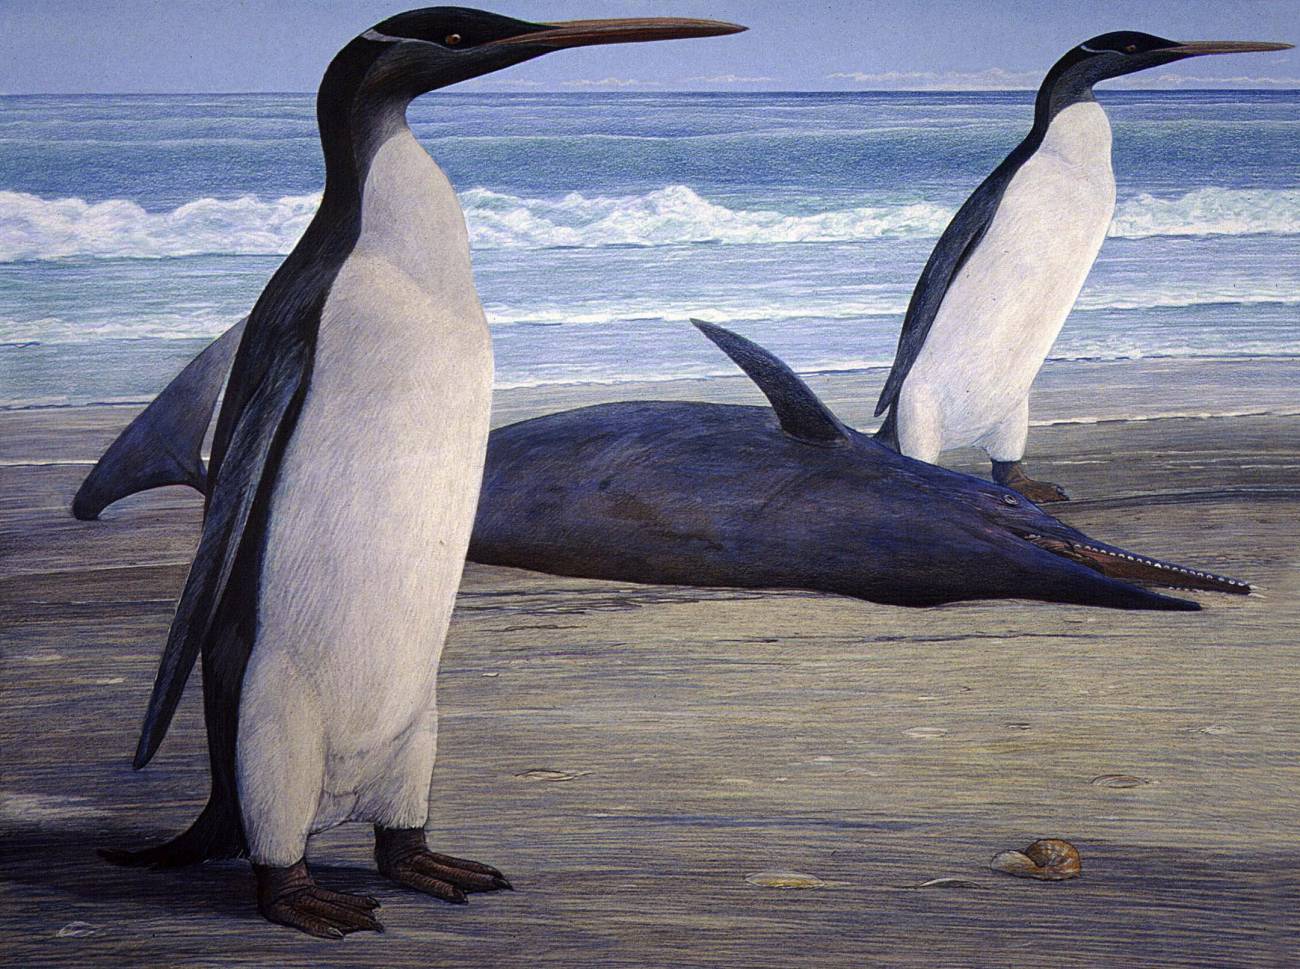 En la imagen, recreación artística realizada por el artista Chris Gaskin y cedida hoy por el Museo Geológico de la Universidad de Otago, en Nueva Zelanda, de dos pingüinos prehistóricos gigantes "Kairuku" que emergen en la orilla junto a un delfín "Waipatia".